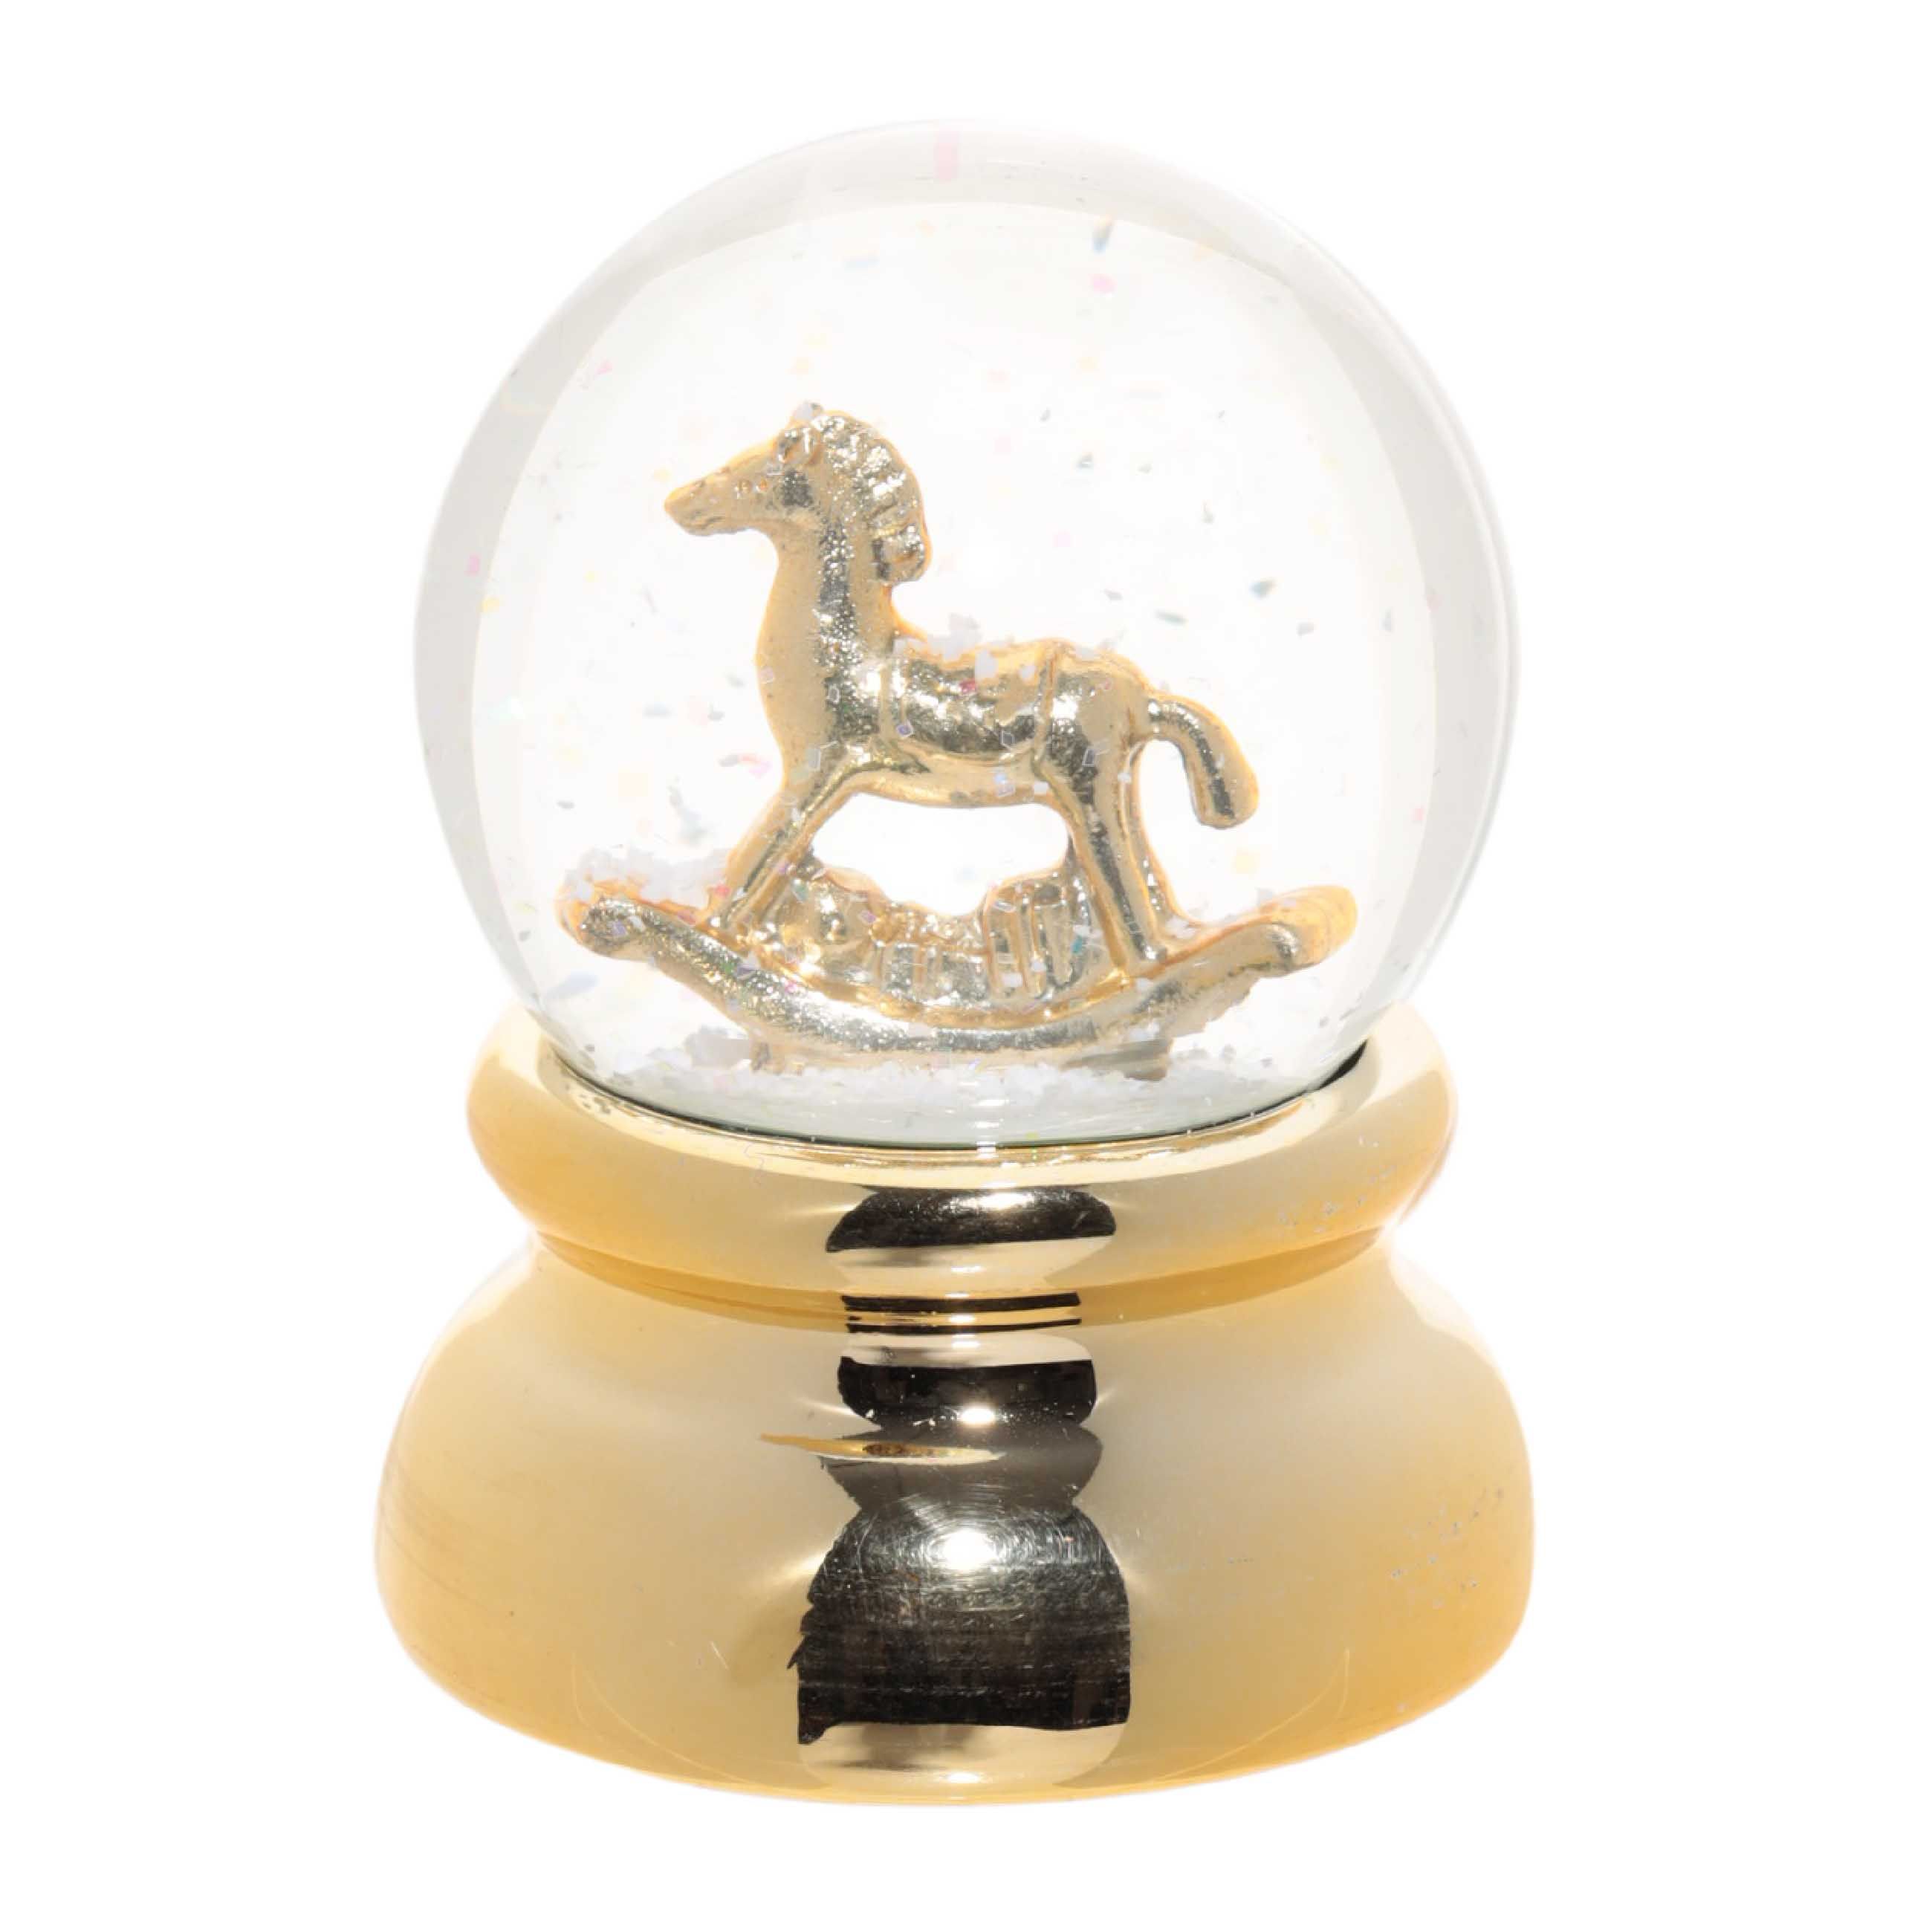 Снежный шар, 9 см, фарфор Р/полирезин, золотистый, Лошадка-качалка, Golden style